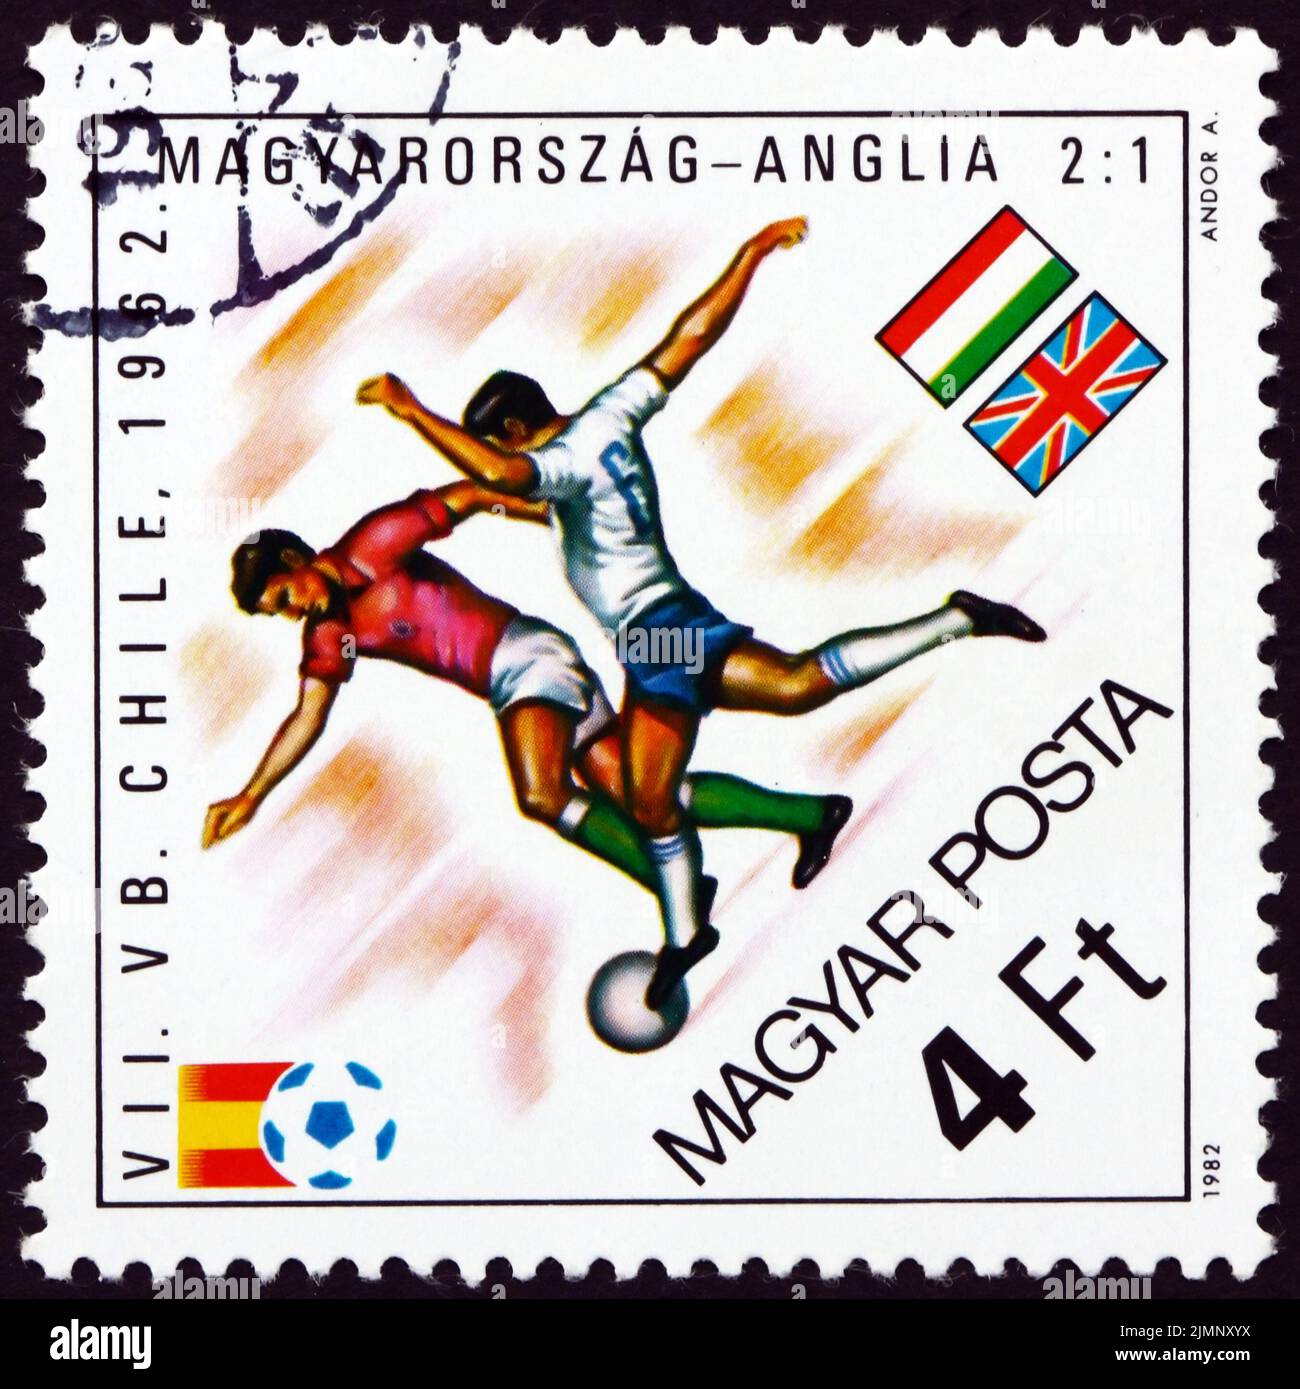 UNGARN - UM 1982: Eine in Ungarn gedruckte Marke zeigt Fußballspieler in Aktion, Ungarn im Wettbewerb mit England, 1962, um 1982 Stockfoto